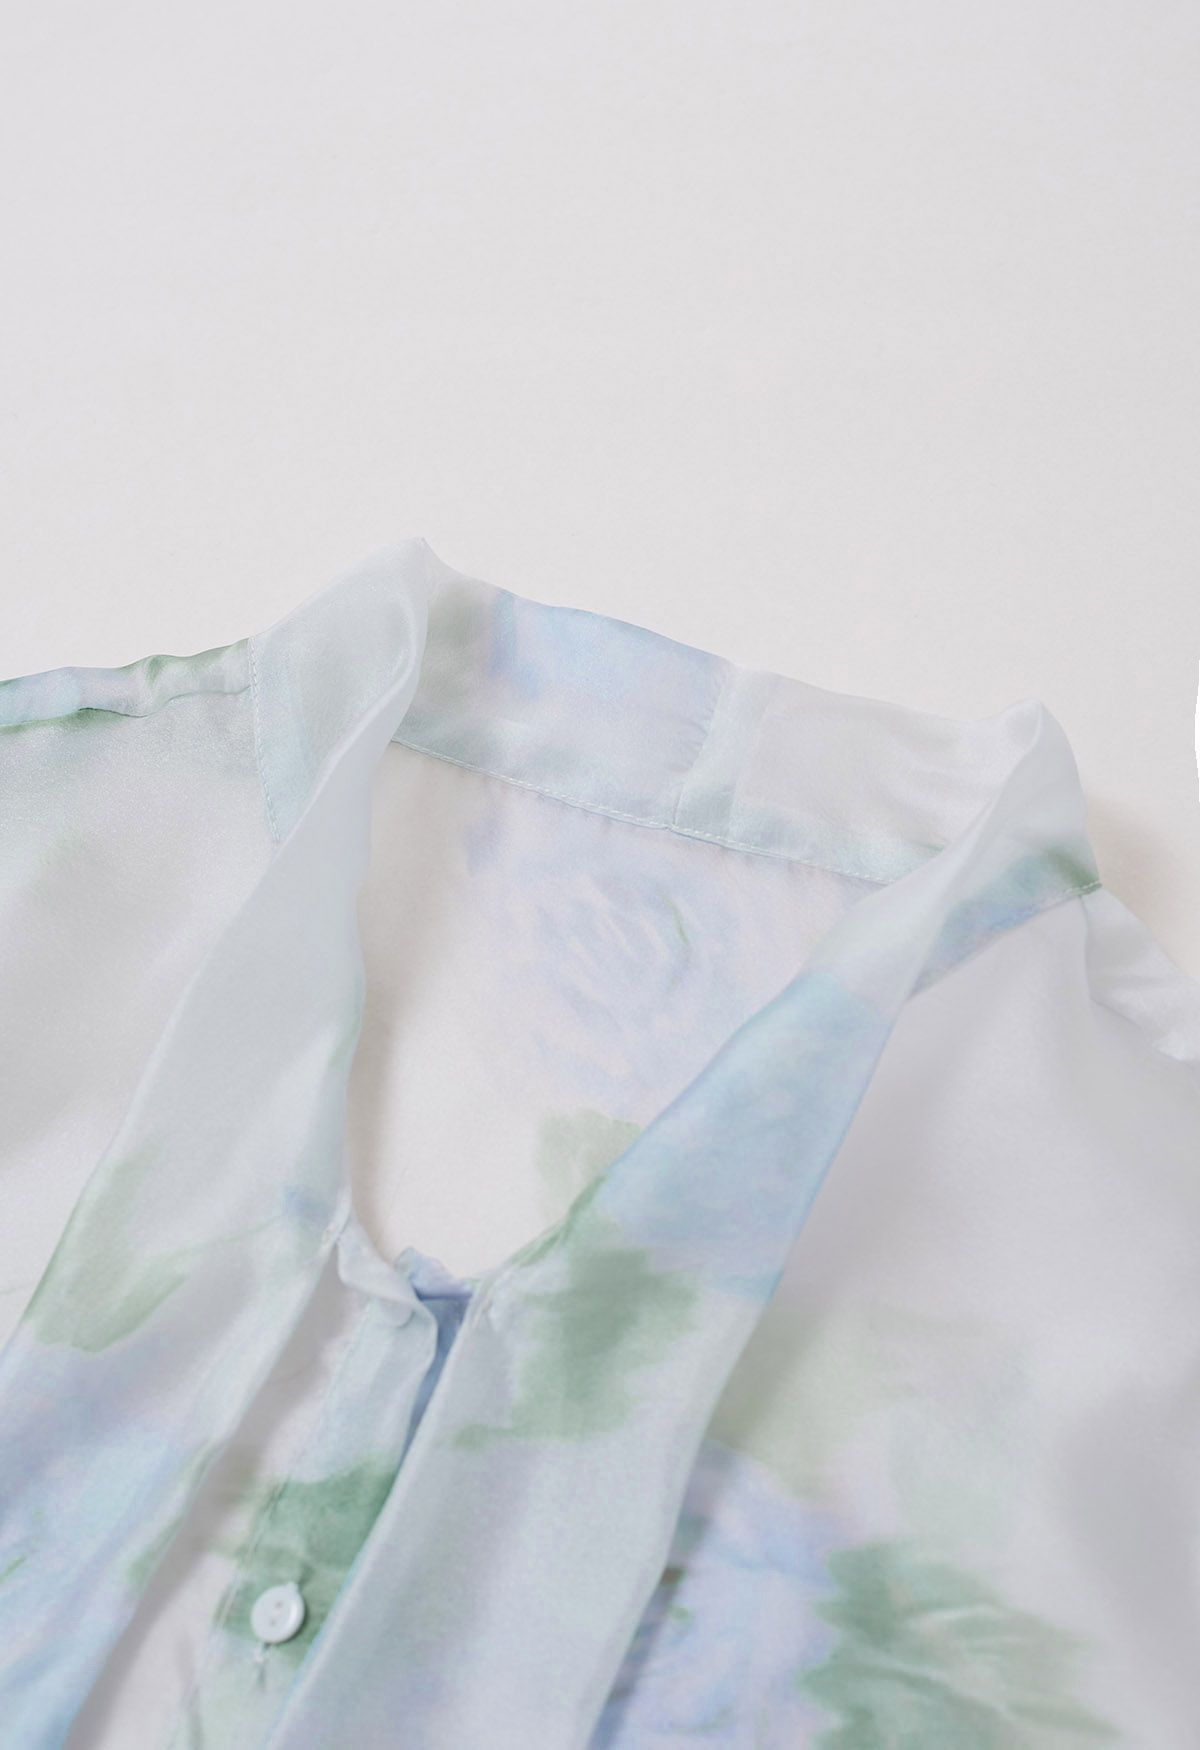 Bezauberndes, transparentes Hemd mit Schleife und Aquarellblumenmuster in Blau